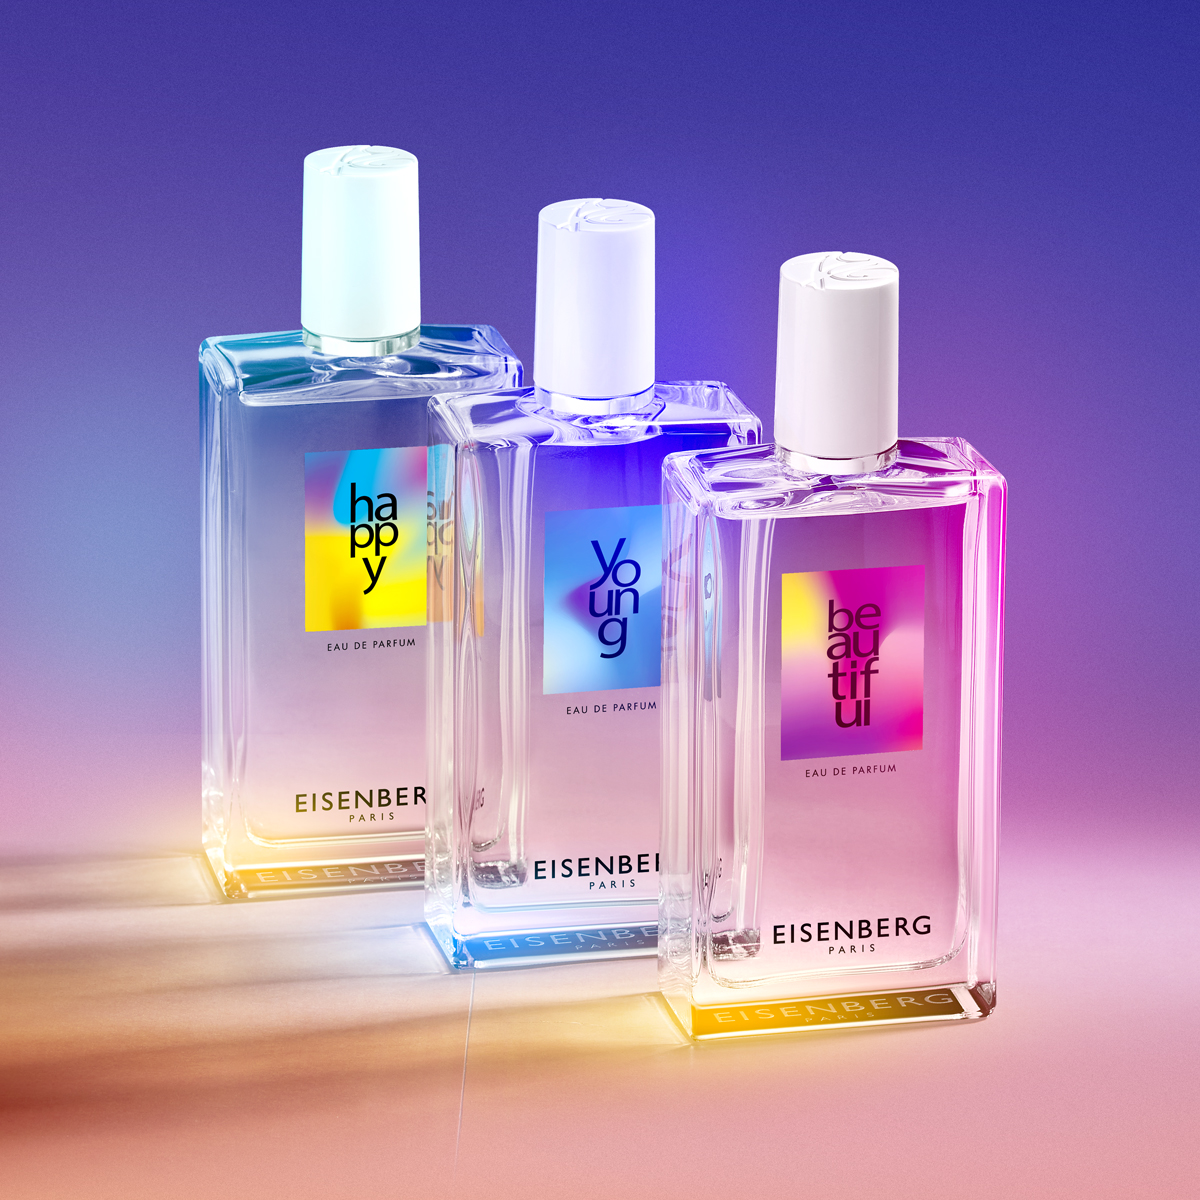 Знаменитые парфюмы Eisenberg Happiness теперь доступны и в DUTY FREE!